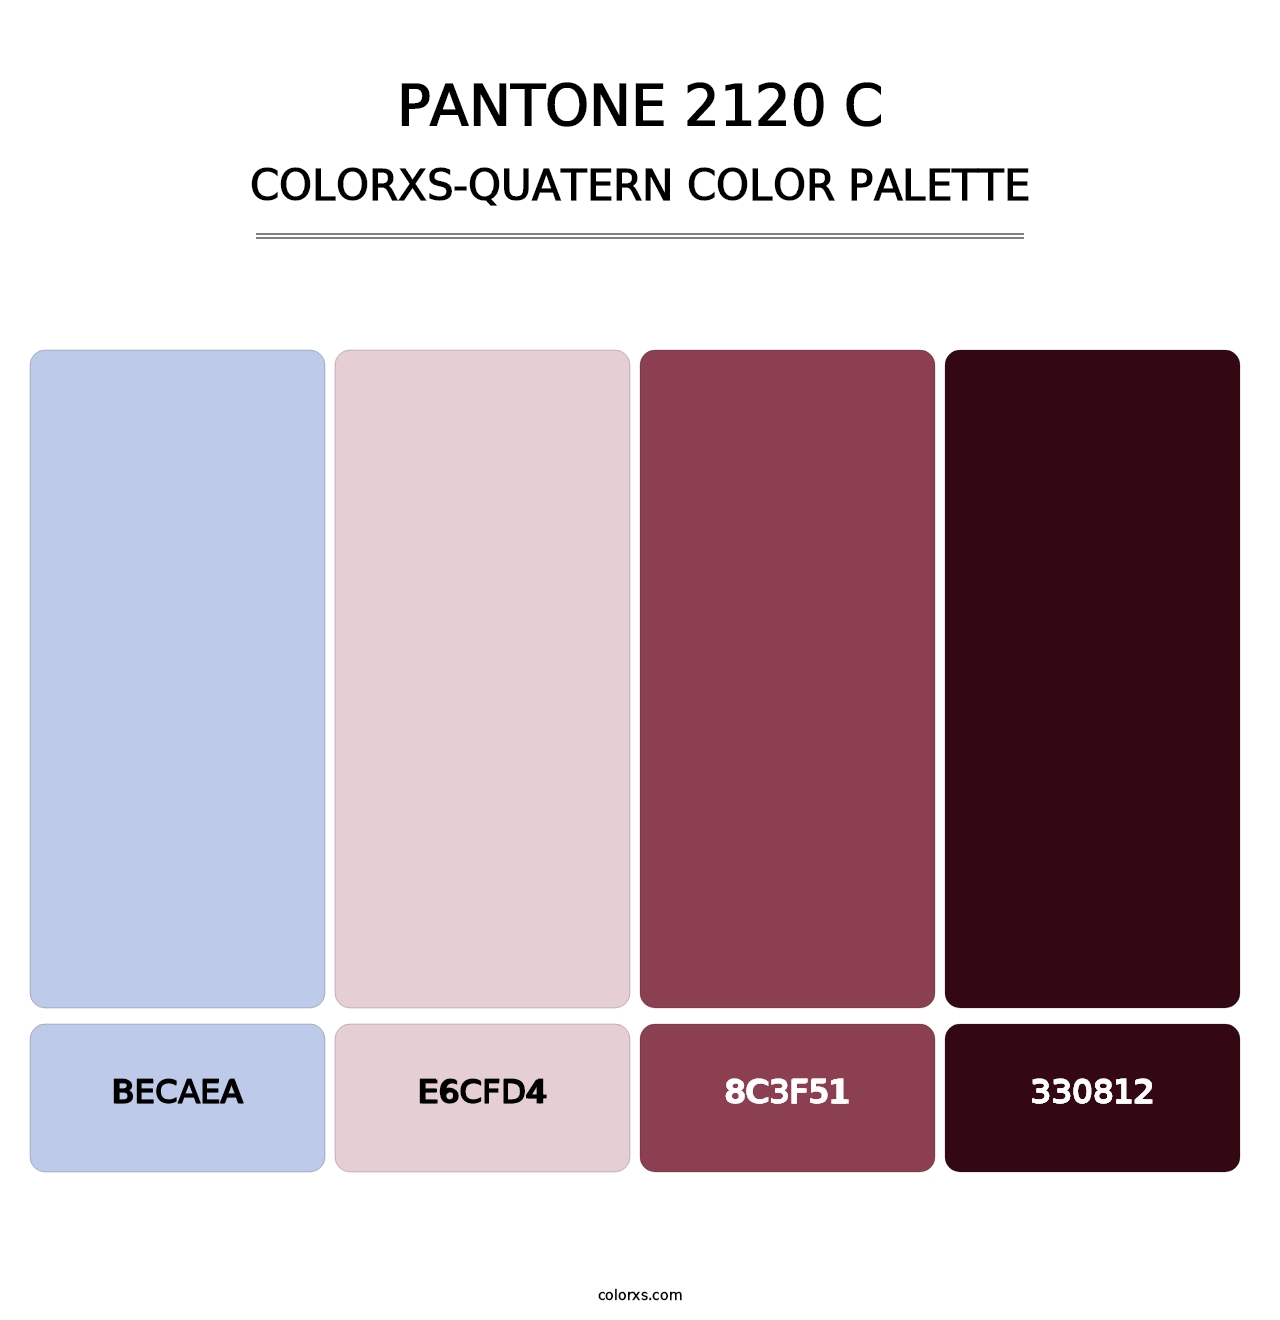 PANTONE 2120 C - Colorxs Quatern Palette